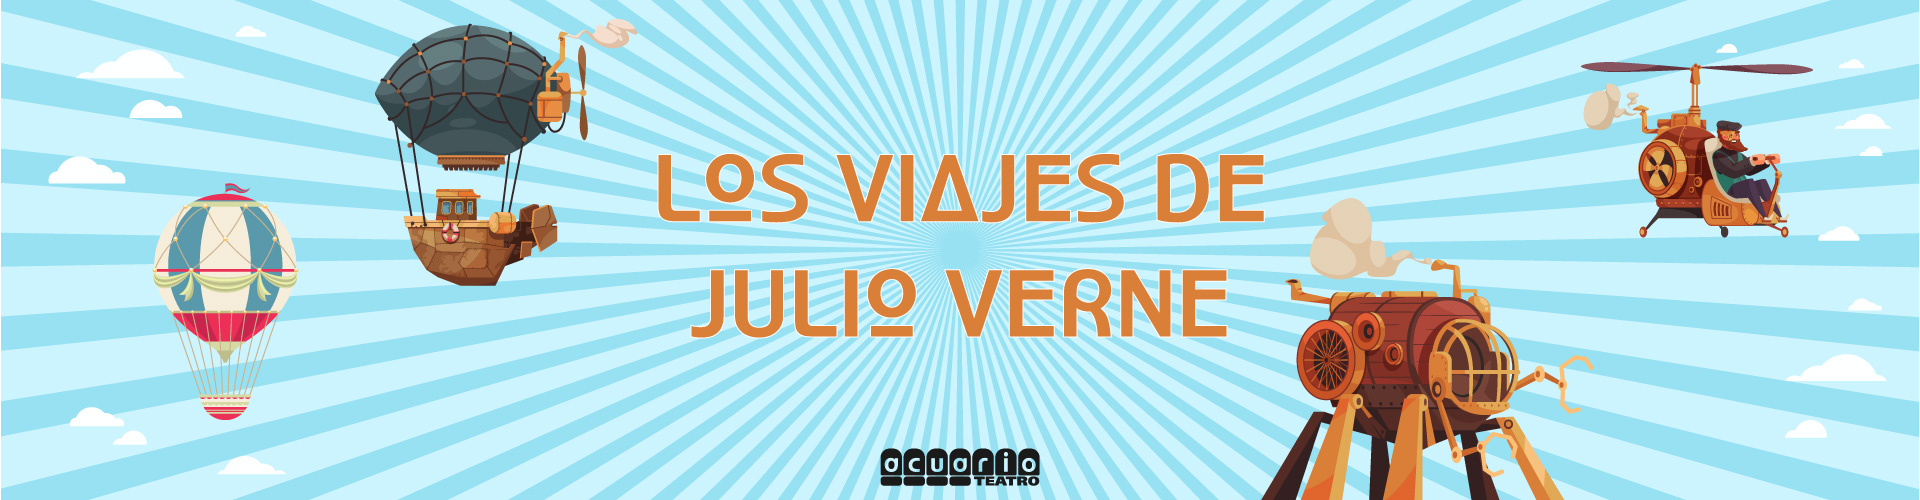 Los Viajes de Julio Verne - Acuario Teatro